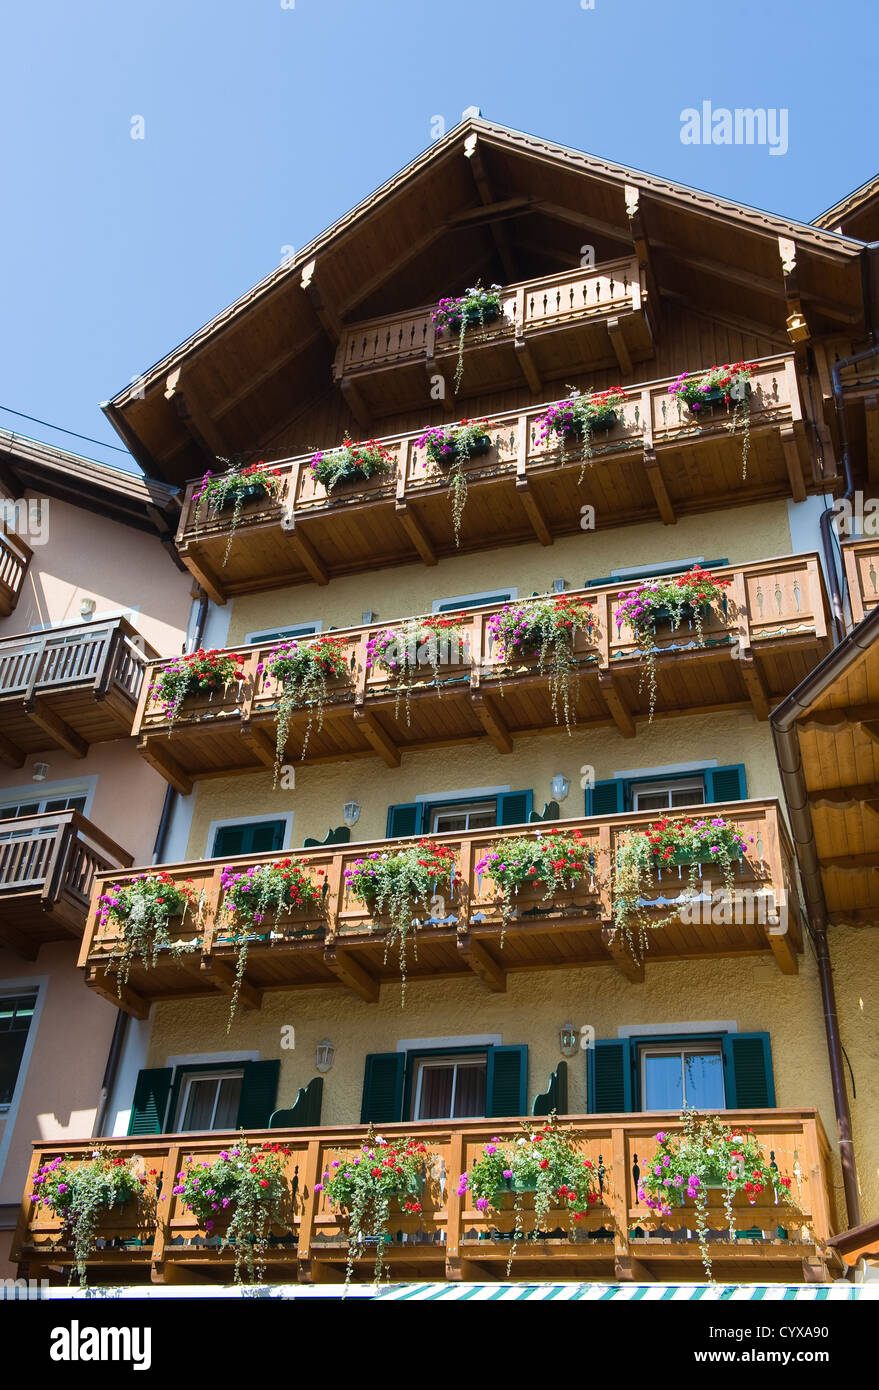 Maison typique en Autriche, avec beaucoup de fleurs accroché sur le balcon Banque D'Images